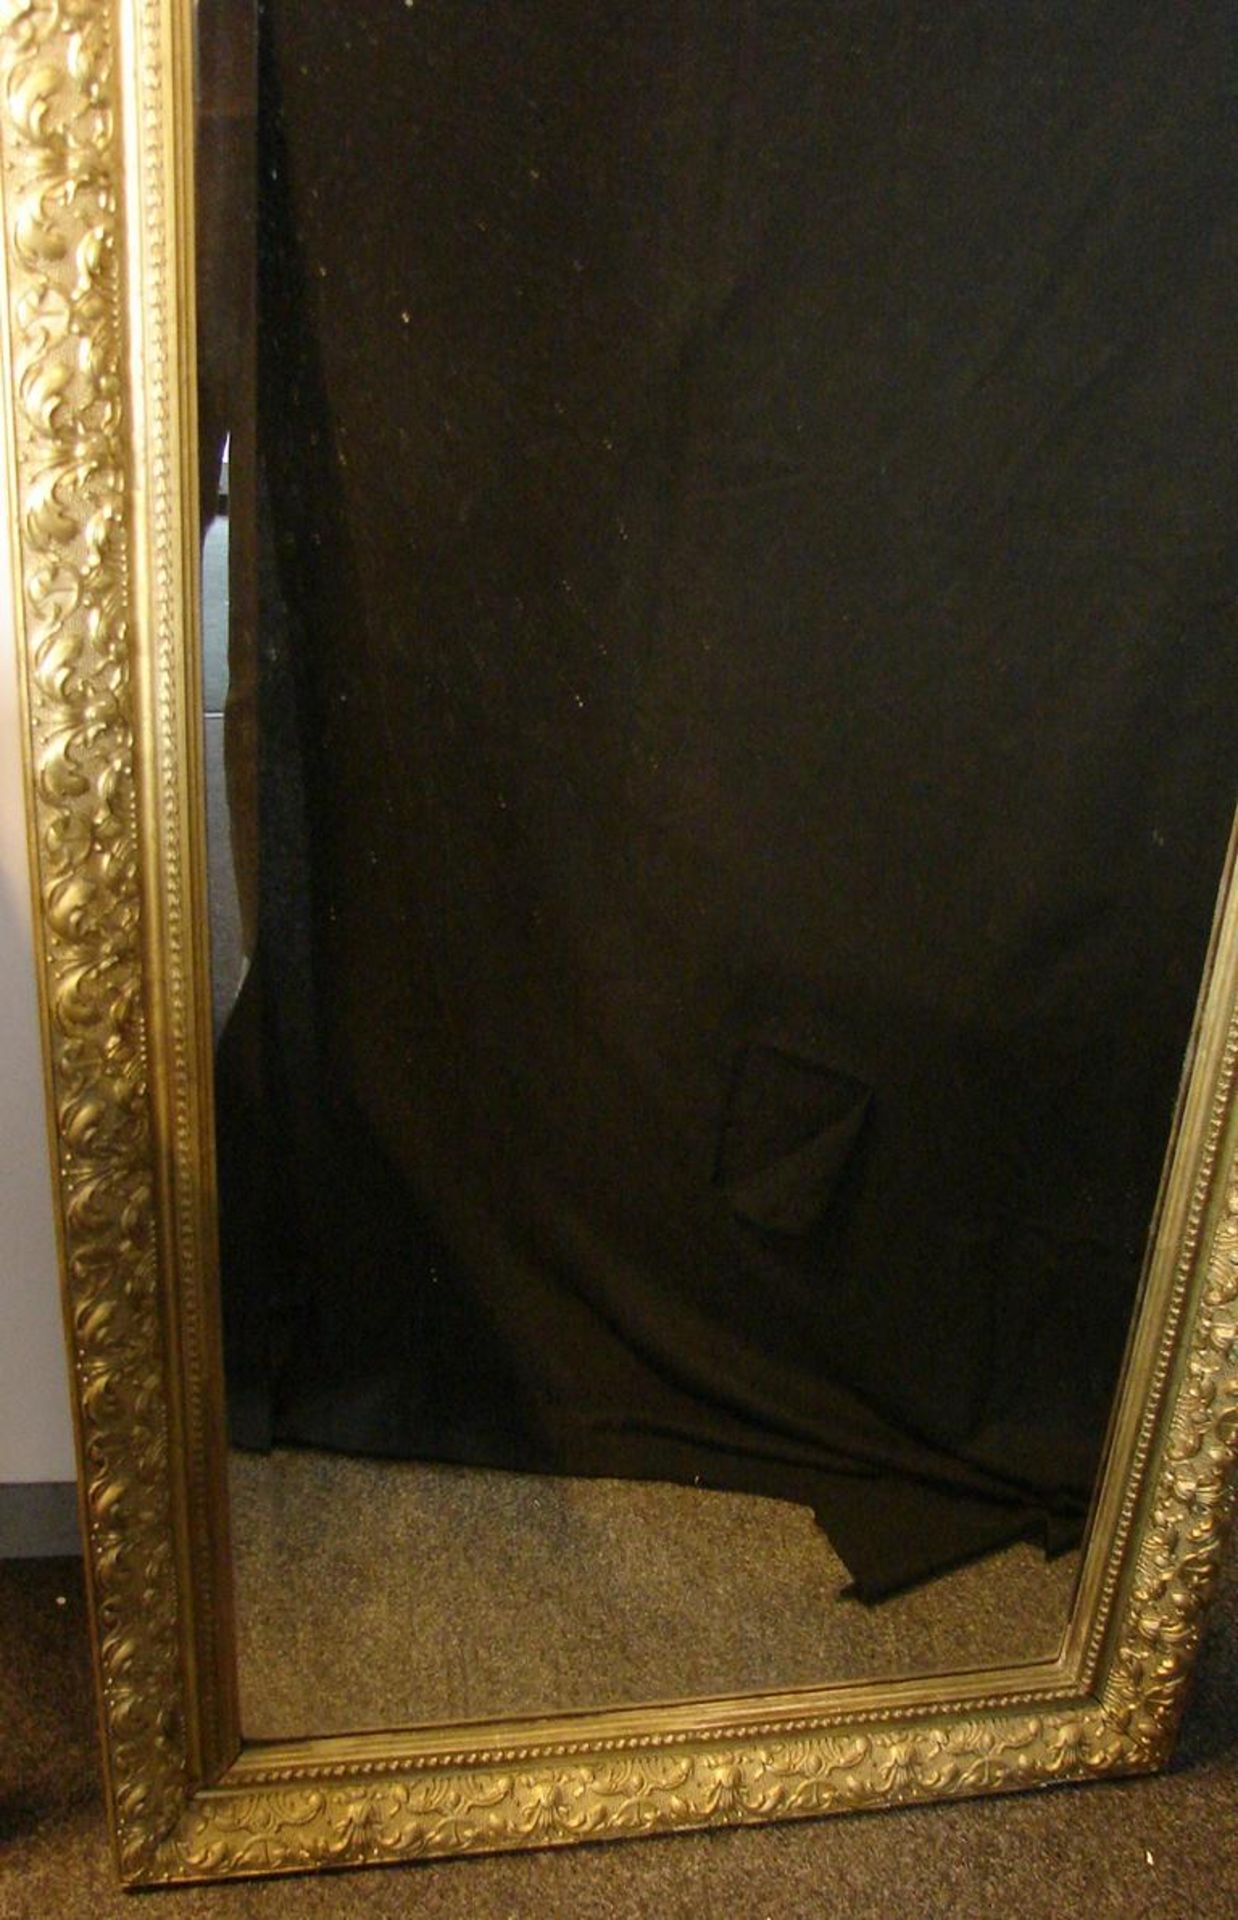 Spiegel, im oberen Teil mit Puttendarstellung, Holz, ca. 149 x 71 cm - Image 2 of 3